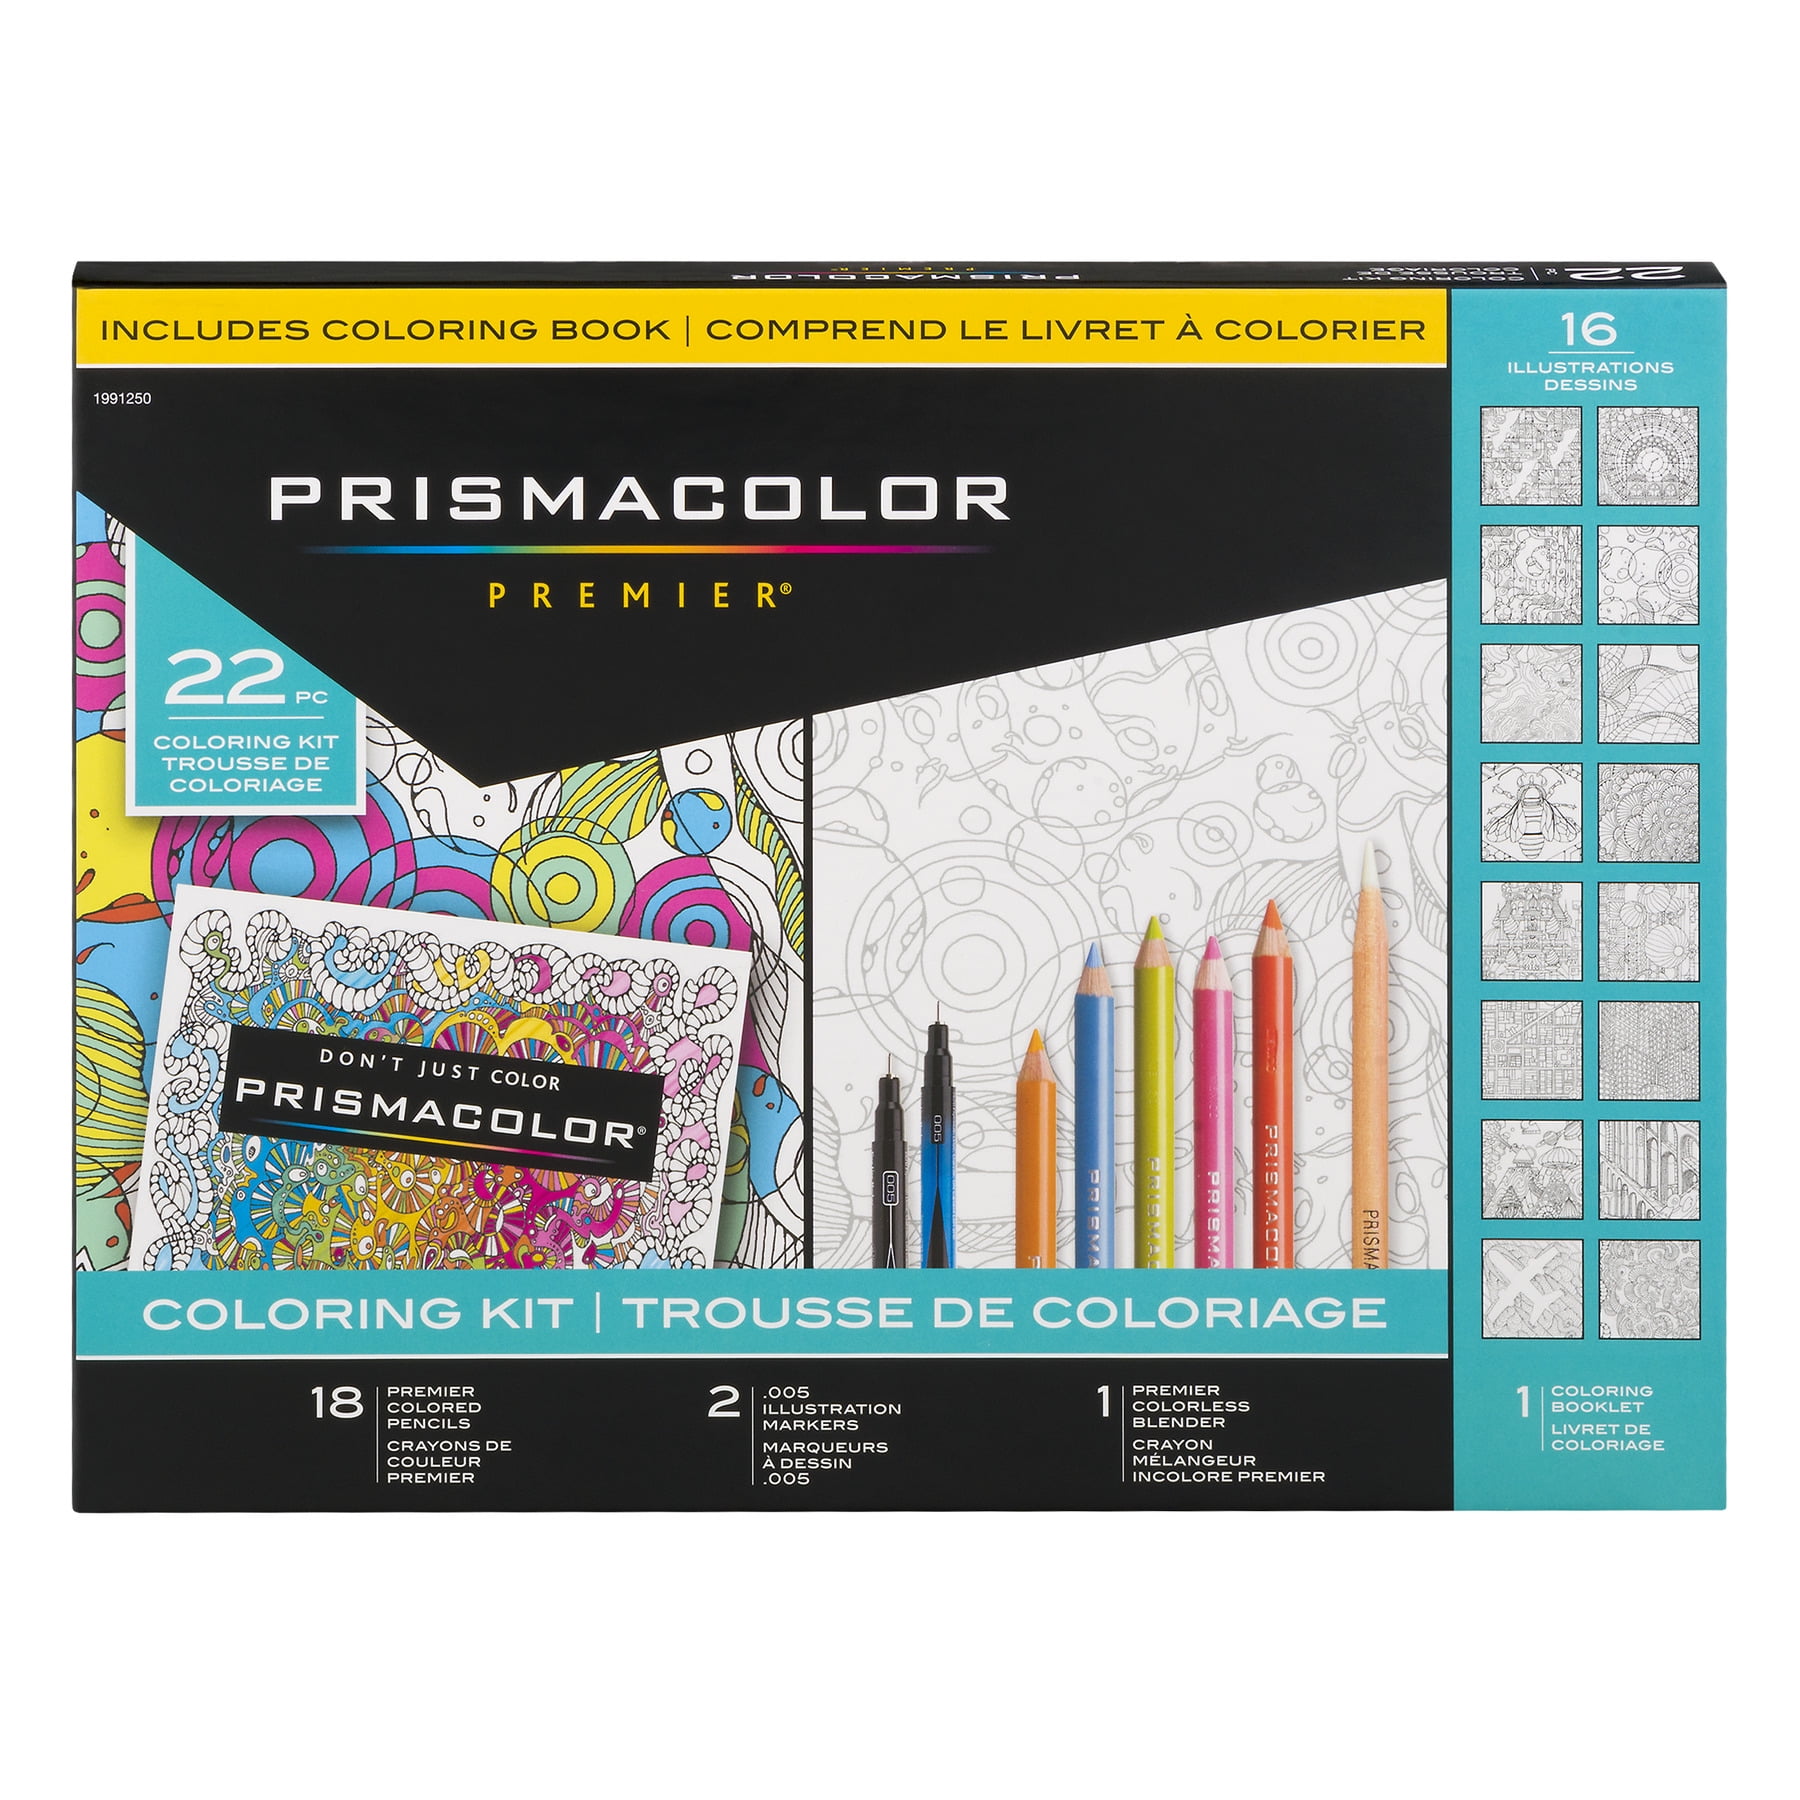 Prismacolor Premier – The Colouring Times